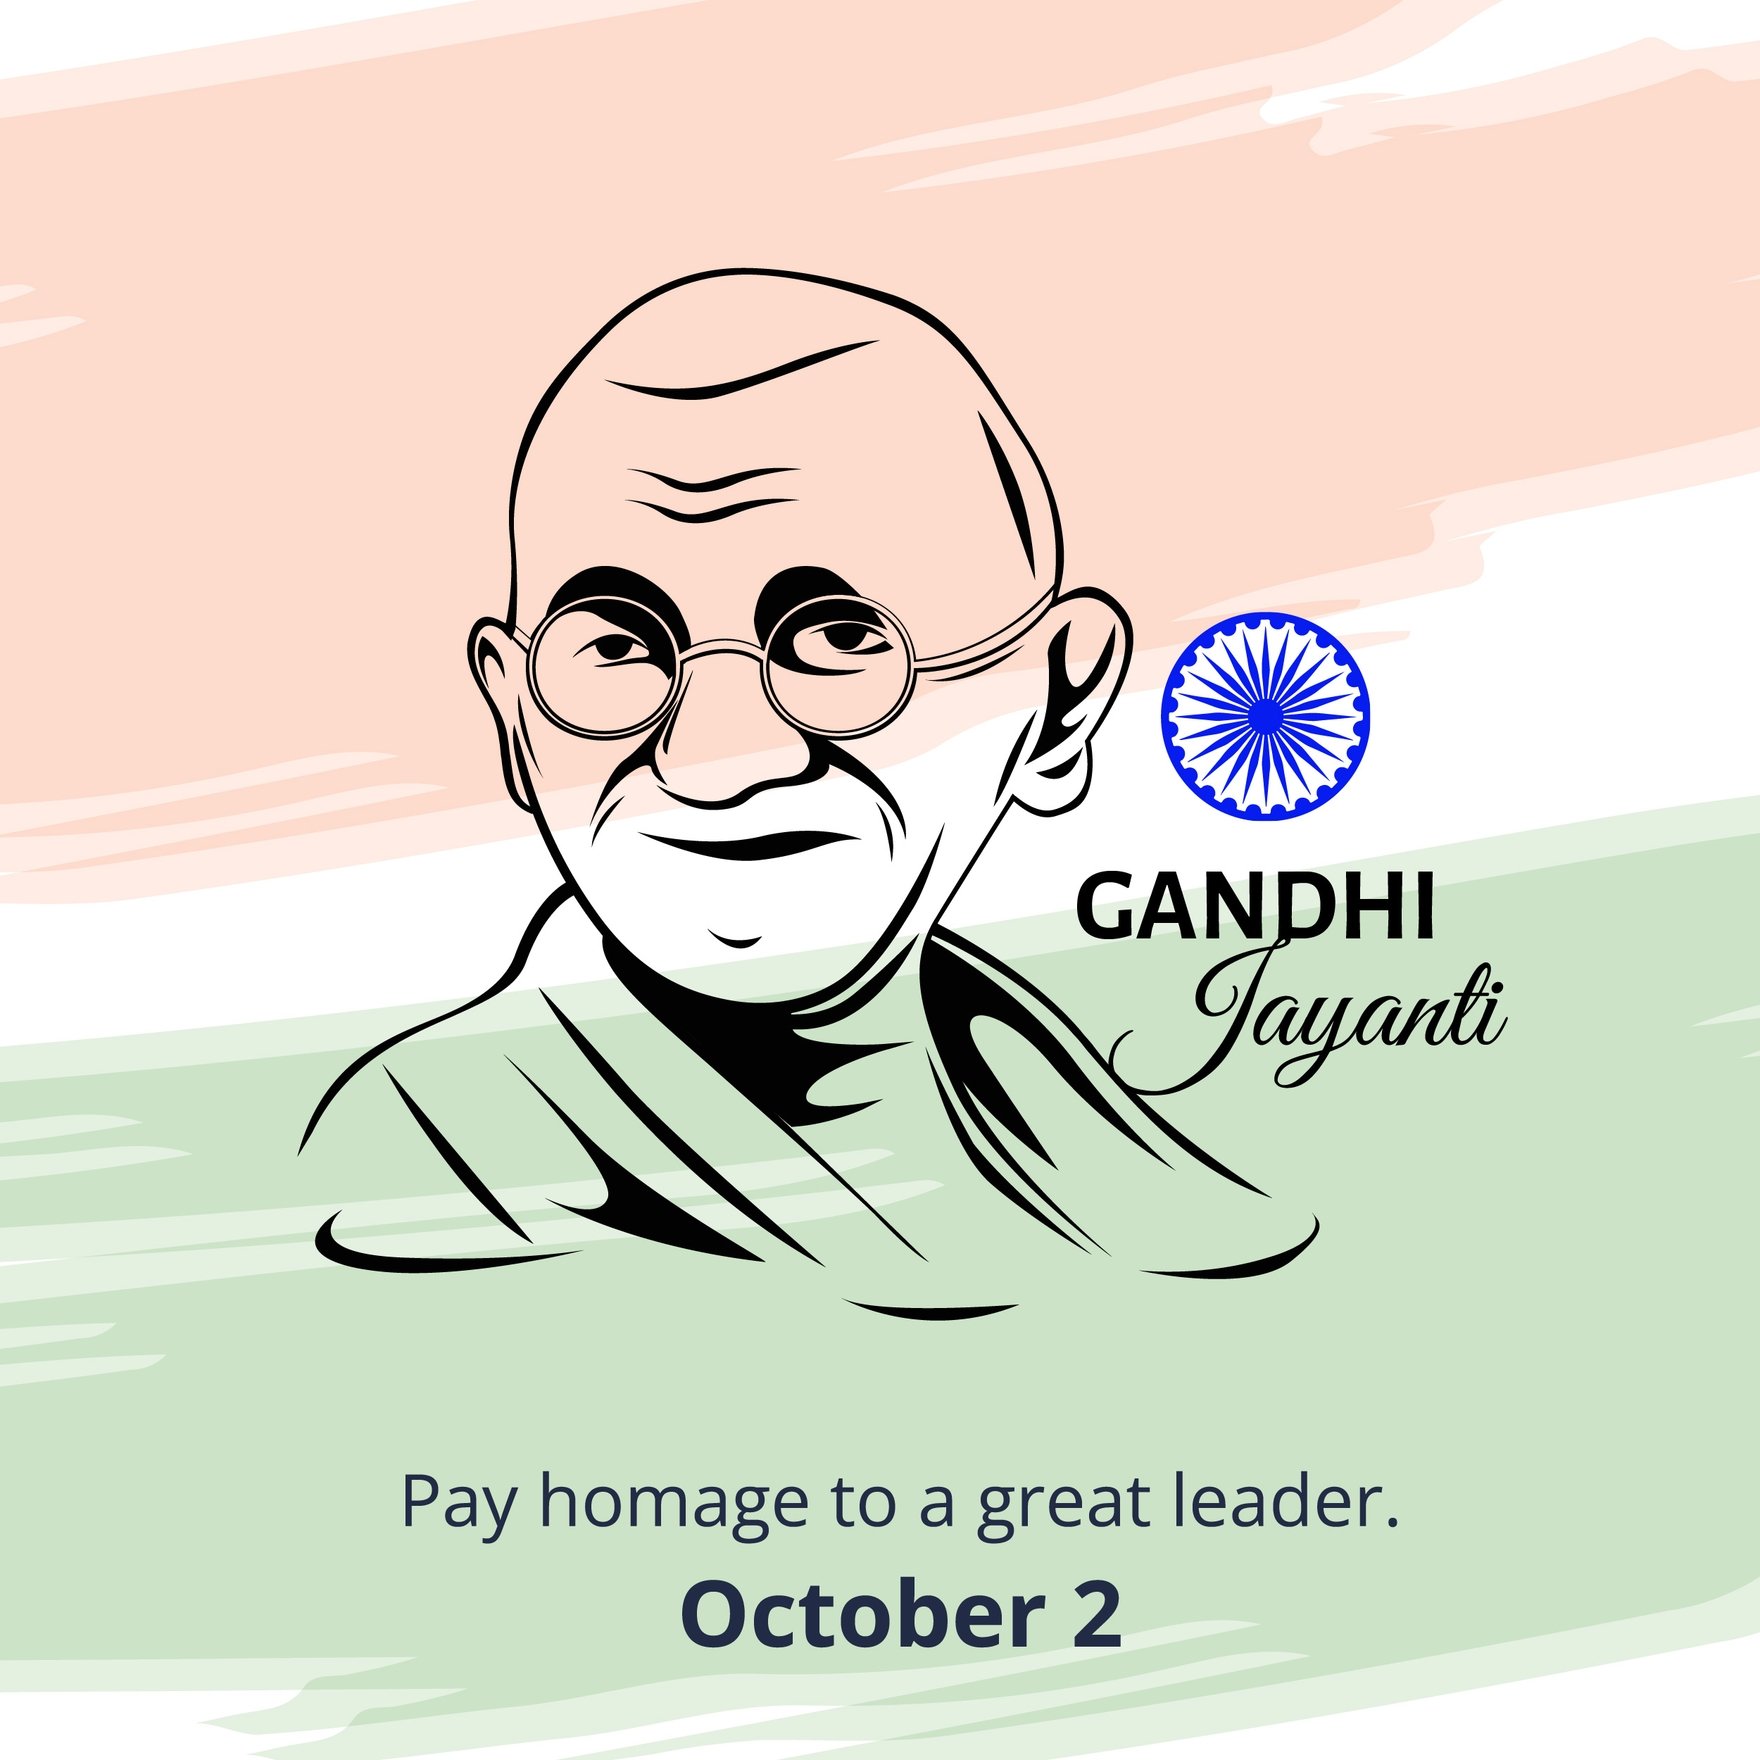 Gandhi Jayanti Templates